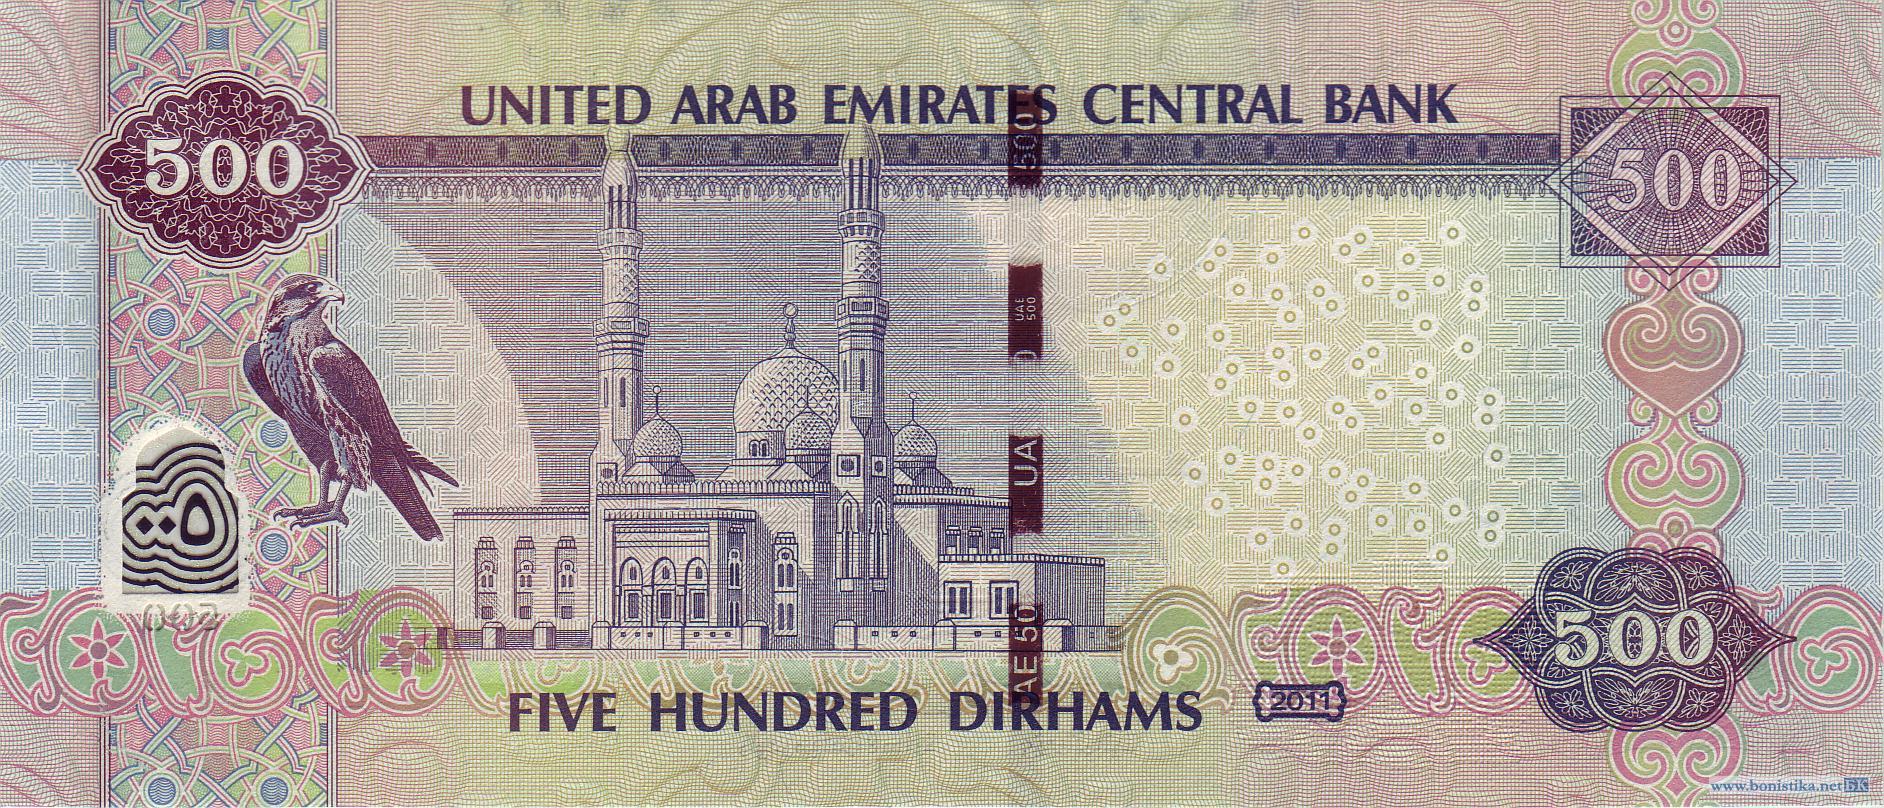 500000 дирхам. Валюта Объединенных арабских Эмиратов. 500 Дирхам ОАЭ банкнота. Купюра 500 дирхам. 500 Арабских дирхам.